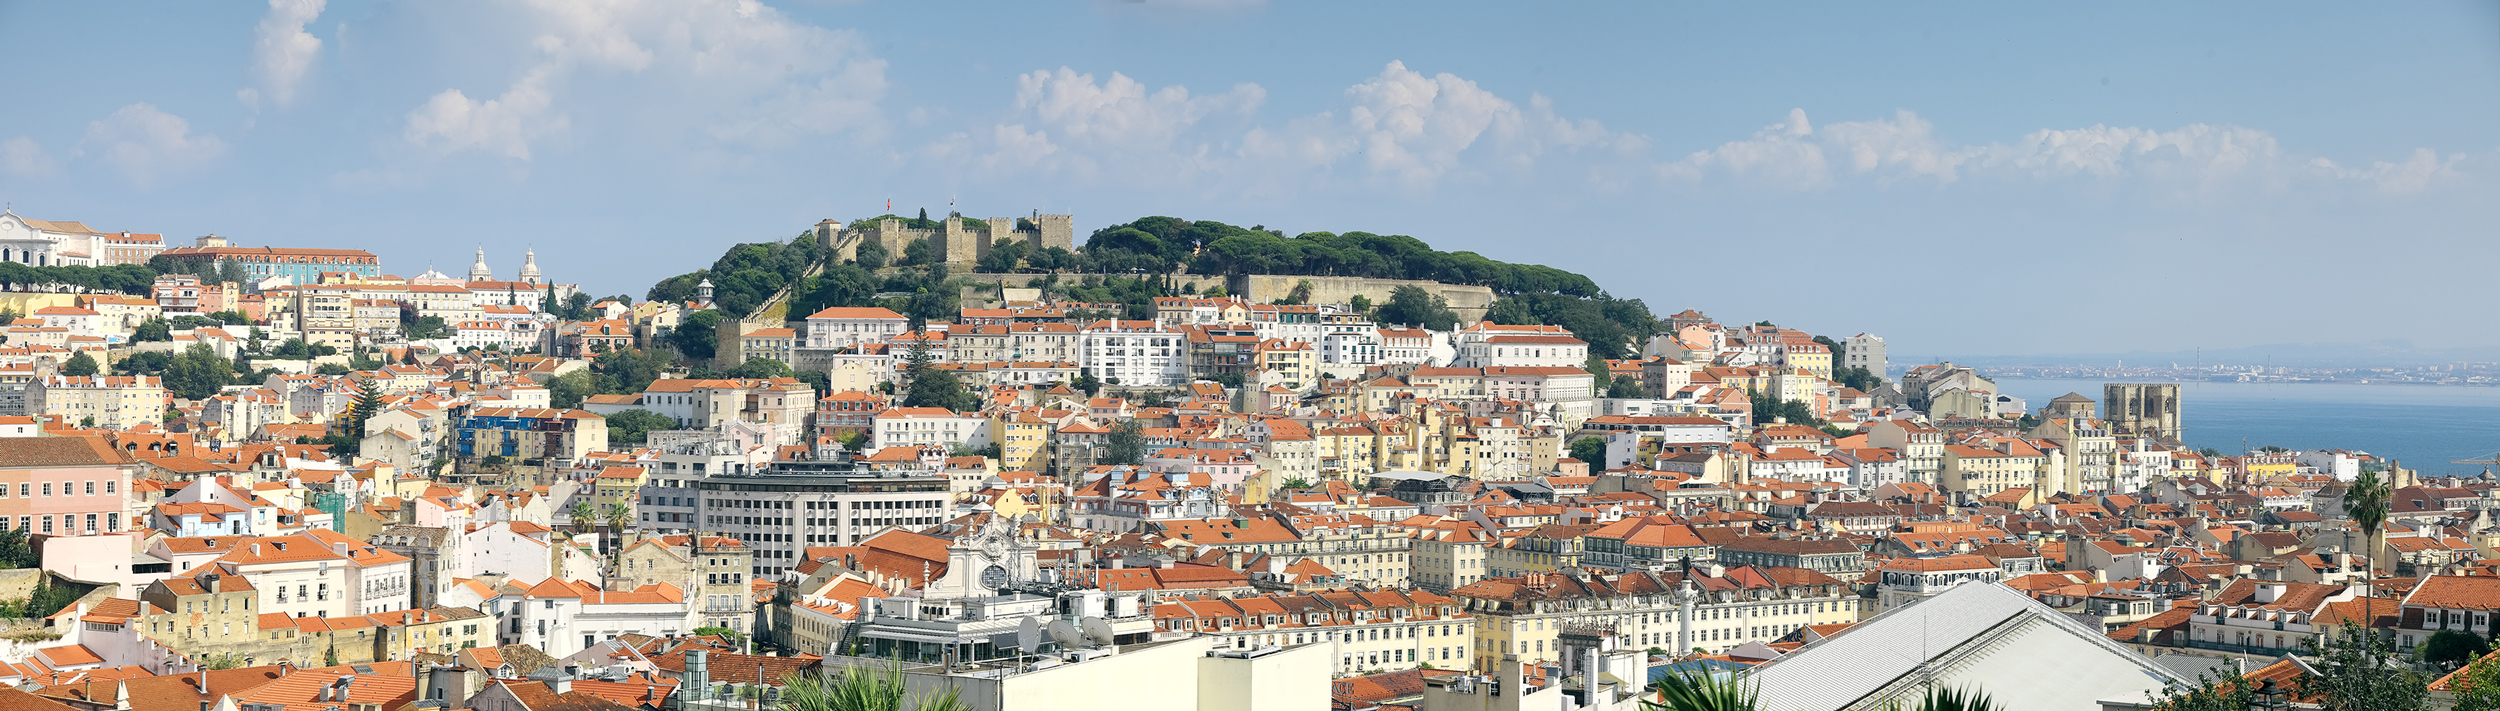 Lisboa - Vista al castillo de São Jorge  | © Turismo de Lisboa |